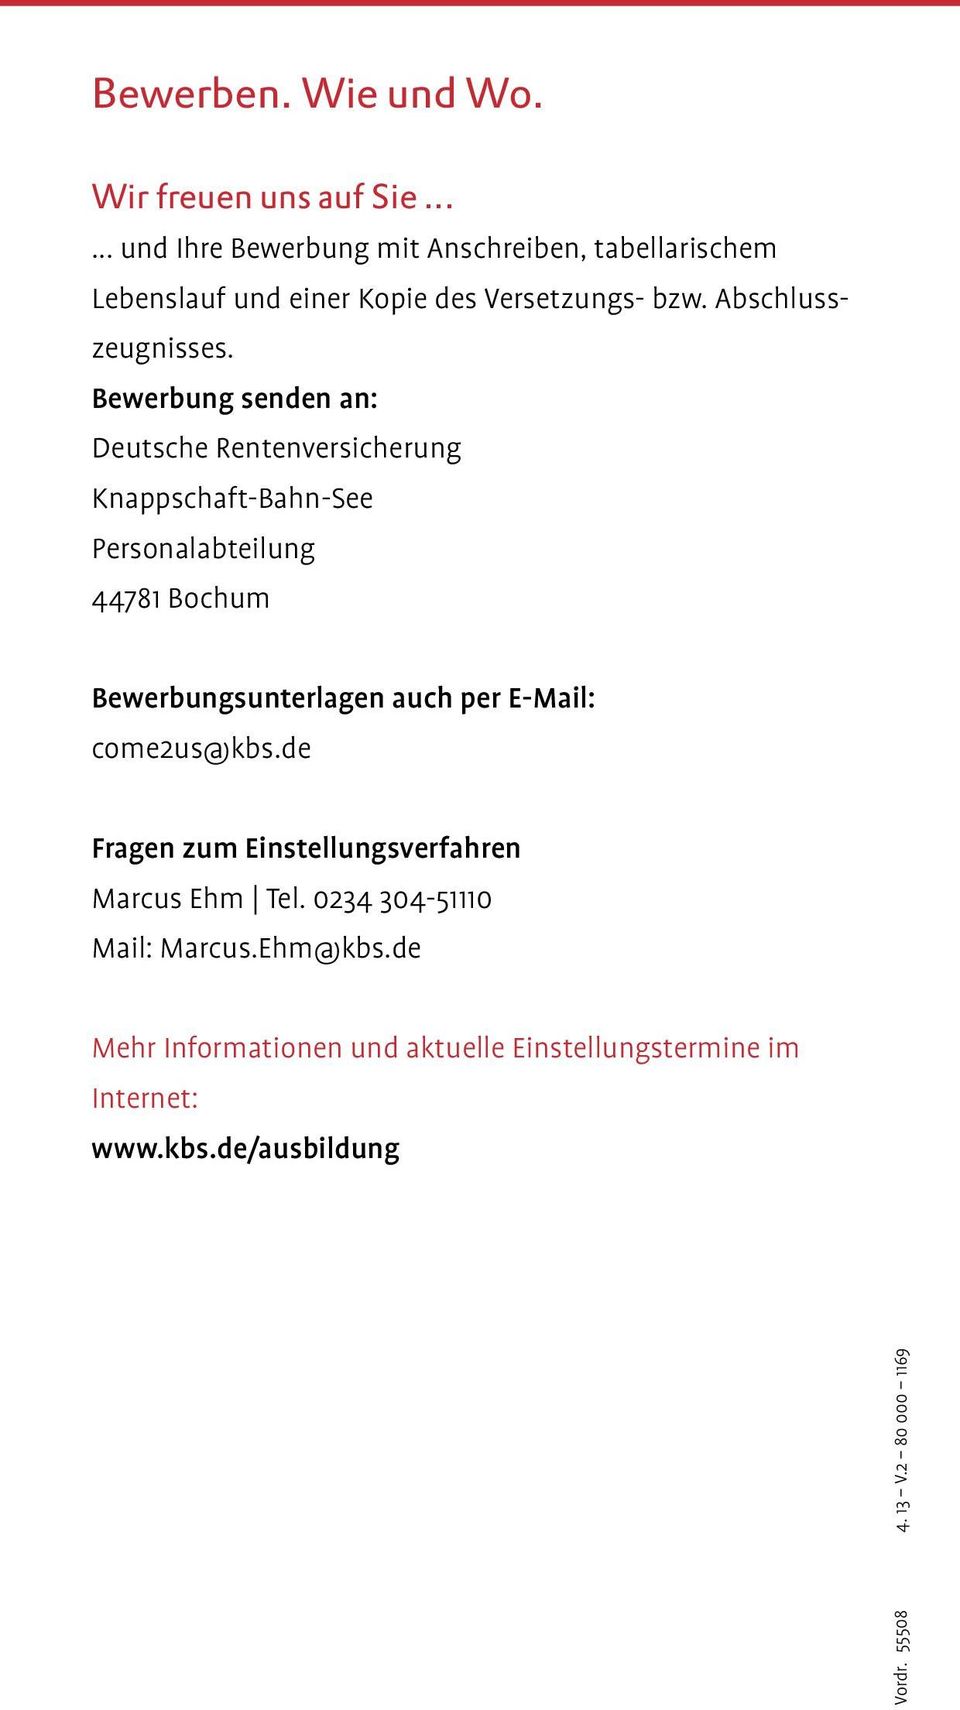 Bewerbung senden an: Deutsche Rentenversicherung Knappschaft-Bahn-See Personalabteilung 44781 Bochum Bewerbungsunterlagen auch per